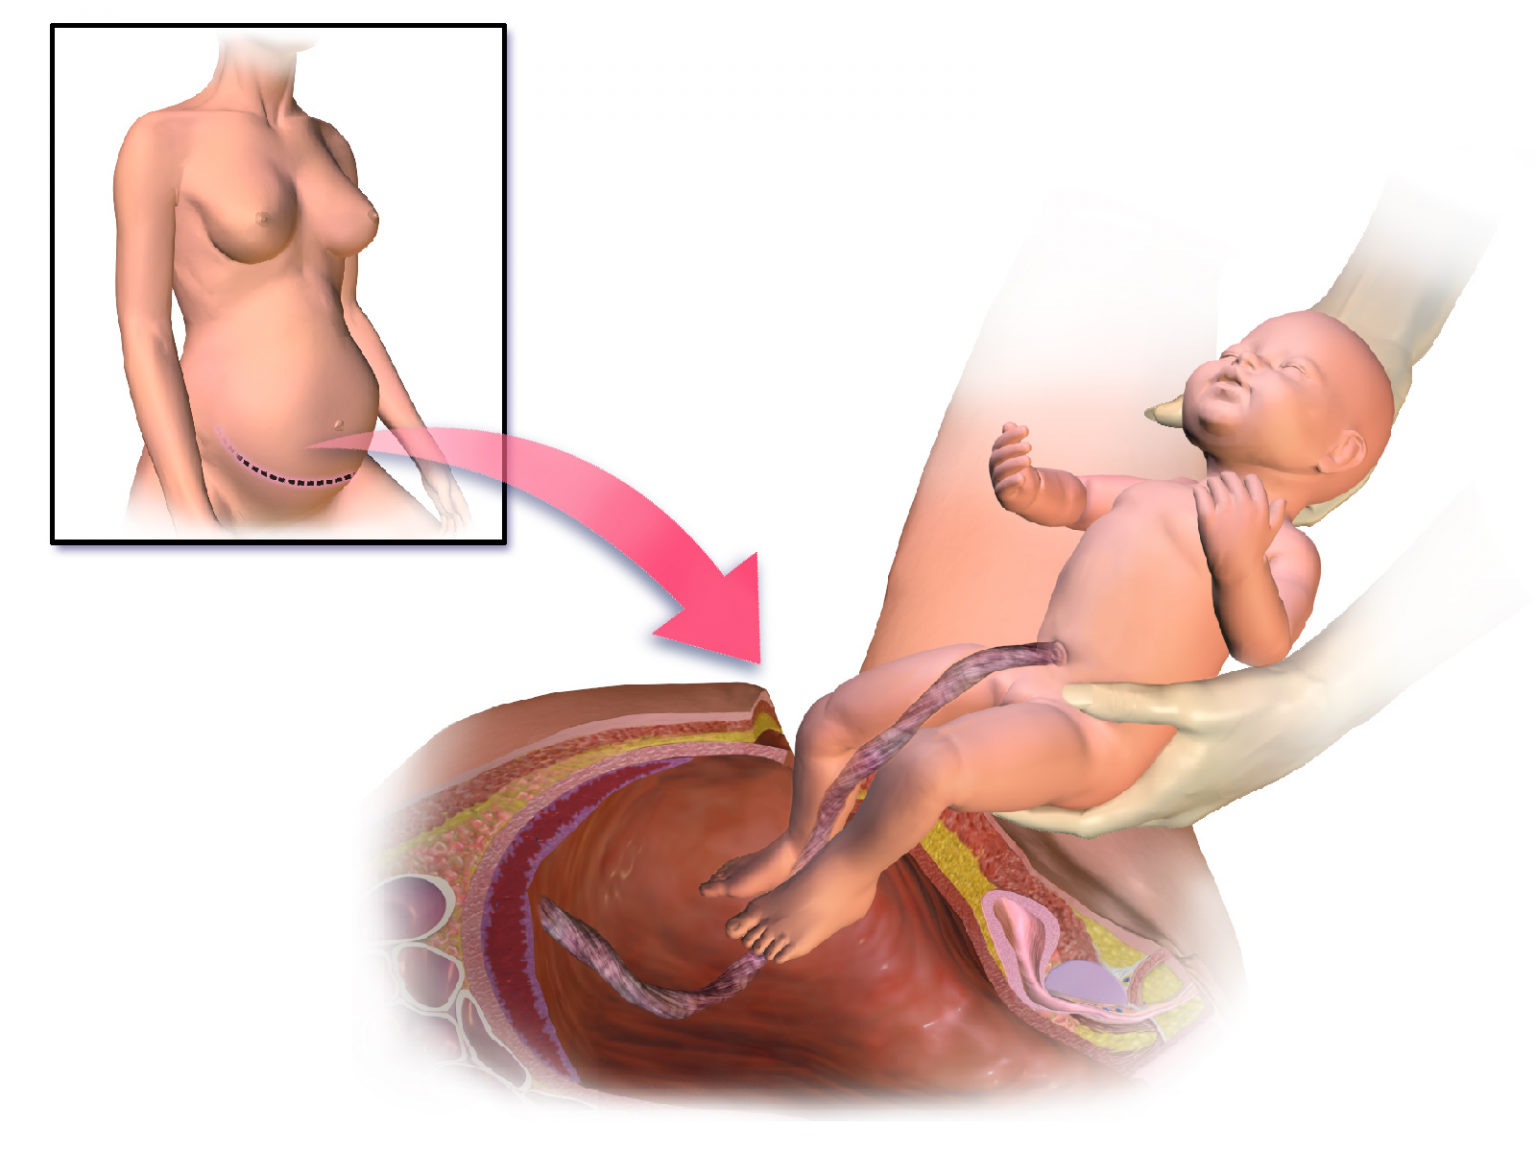 Второй беременности после родов. Рождение ребенка кесарево сечение. Родоразрешение кесарево сечение. Разрез после кесарева сечения.